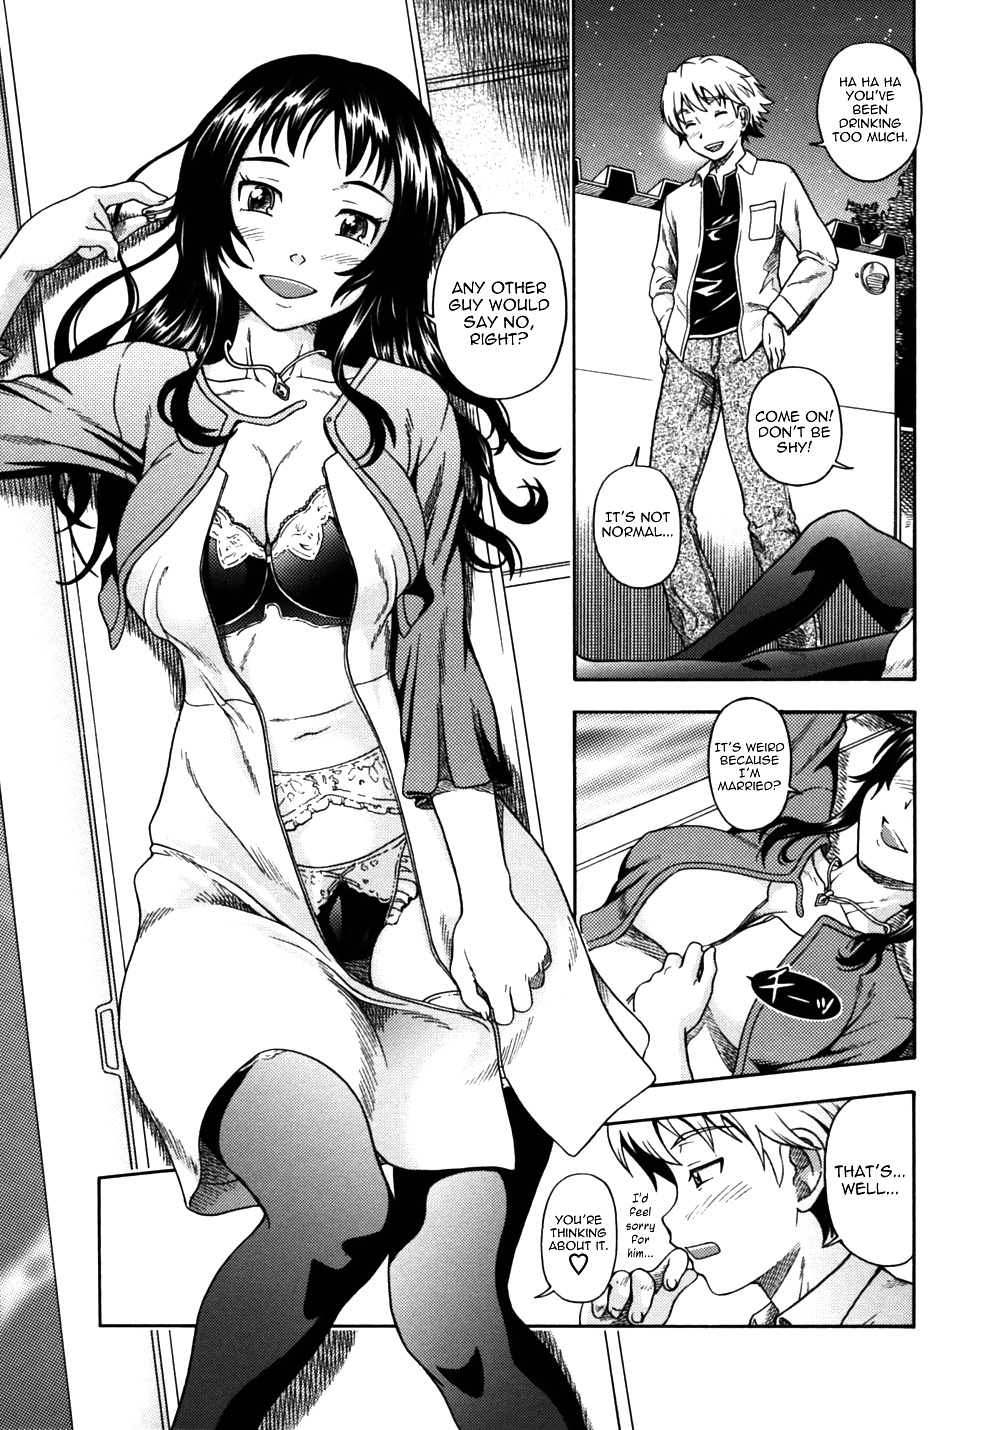 (fumetto hentai) fukudada opere erotiche #4
 #32228784